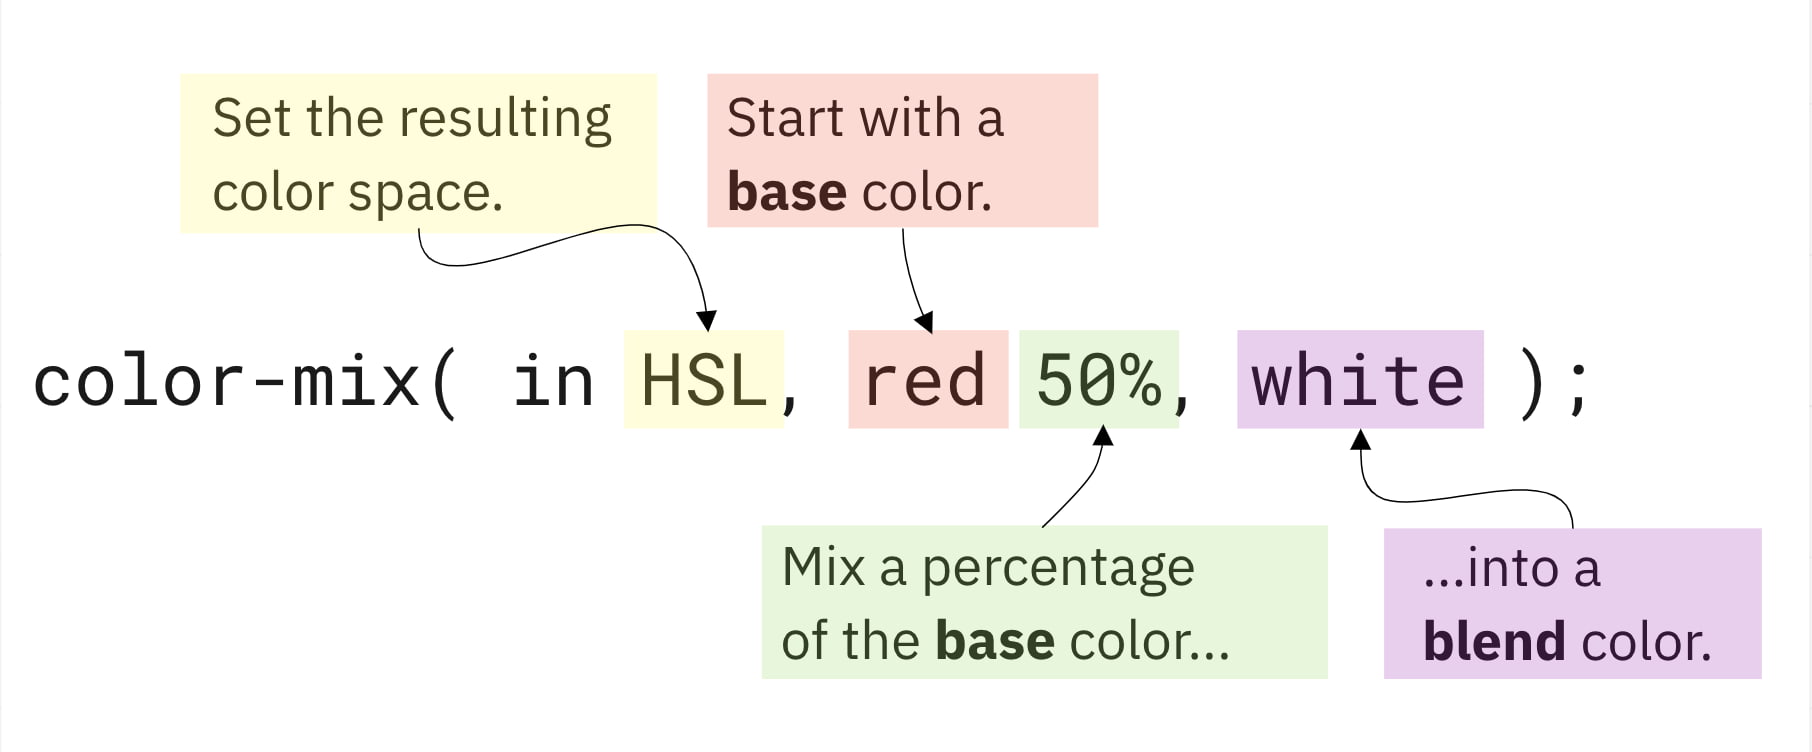 Bảng màu CSS và hỗn hợp màu CSS là những công cụ hữu ích cho thiết kế web của bạn. Hãy tìm hiểu thêm để tạo ra những layout đầy màu sắc và thu hút.